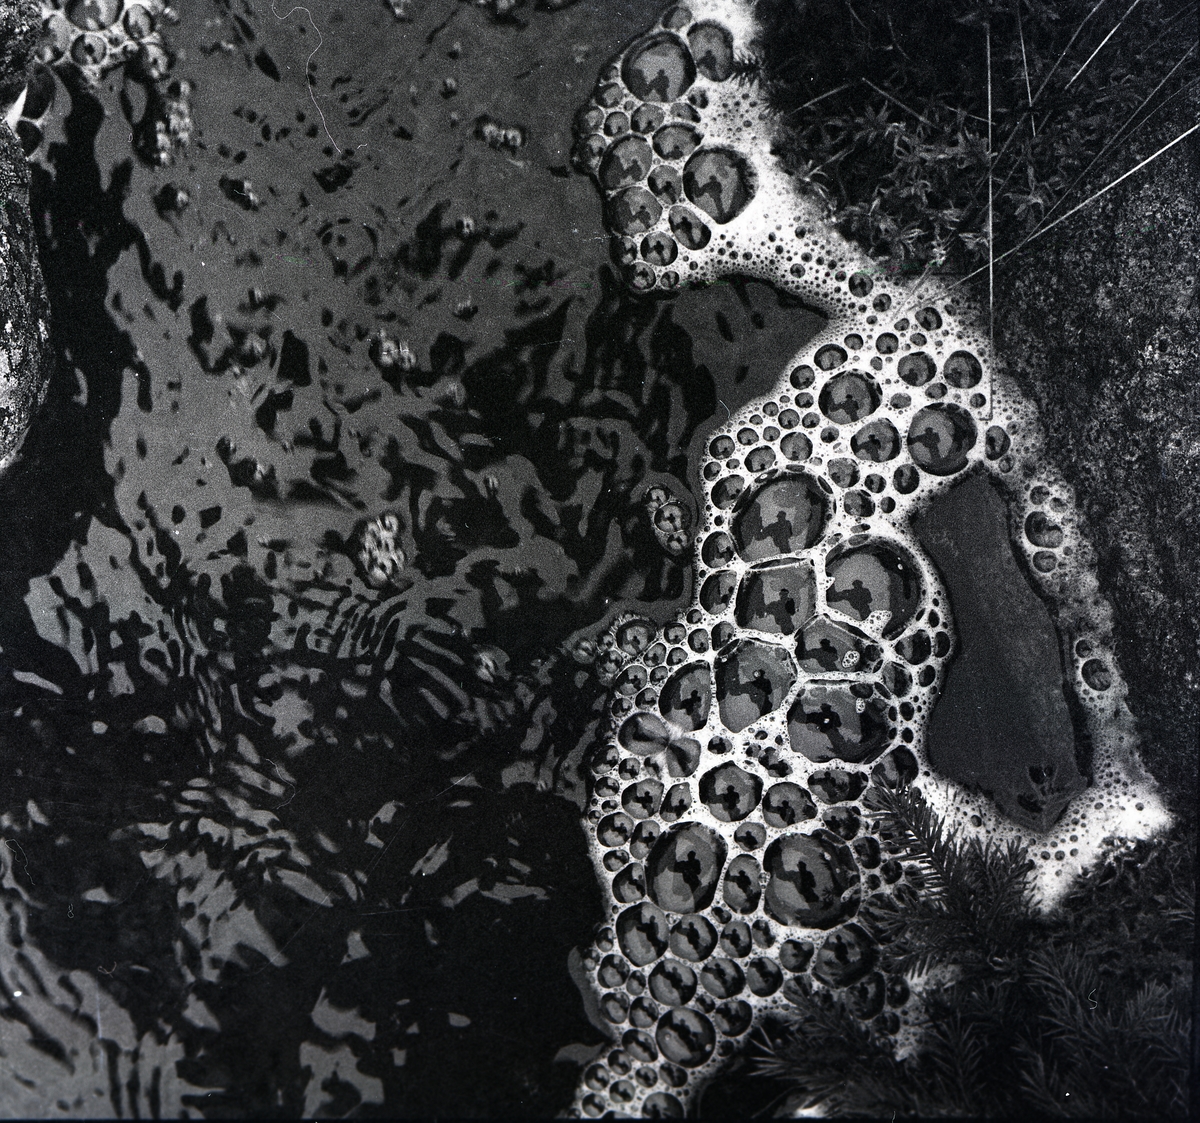 Bubblor bildas på vattenytan intill kanten i trakterna runt Knyssla den 1 maj 1959. I bubblorna syns spegling av fotografen.